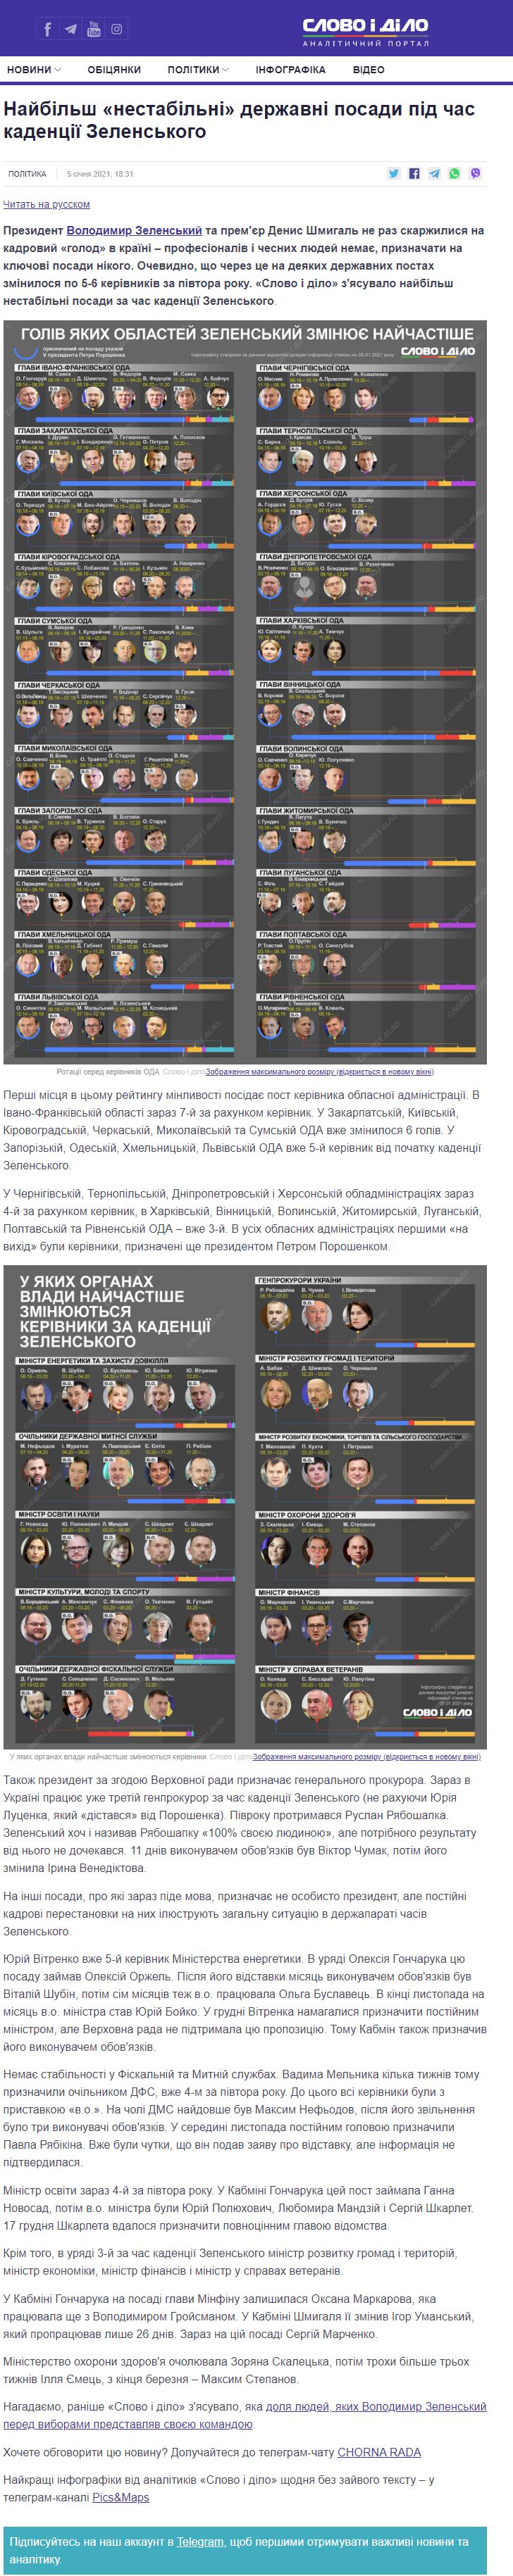 https://www.slovoidilo.ua/2021/01/05/infografika/polityka/najbilsh-nestabilni-derzhavni-posady-kadencziyi-zelenskoho